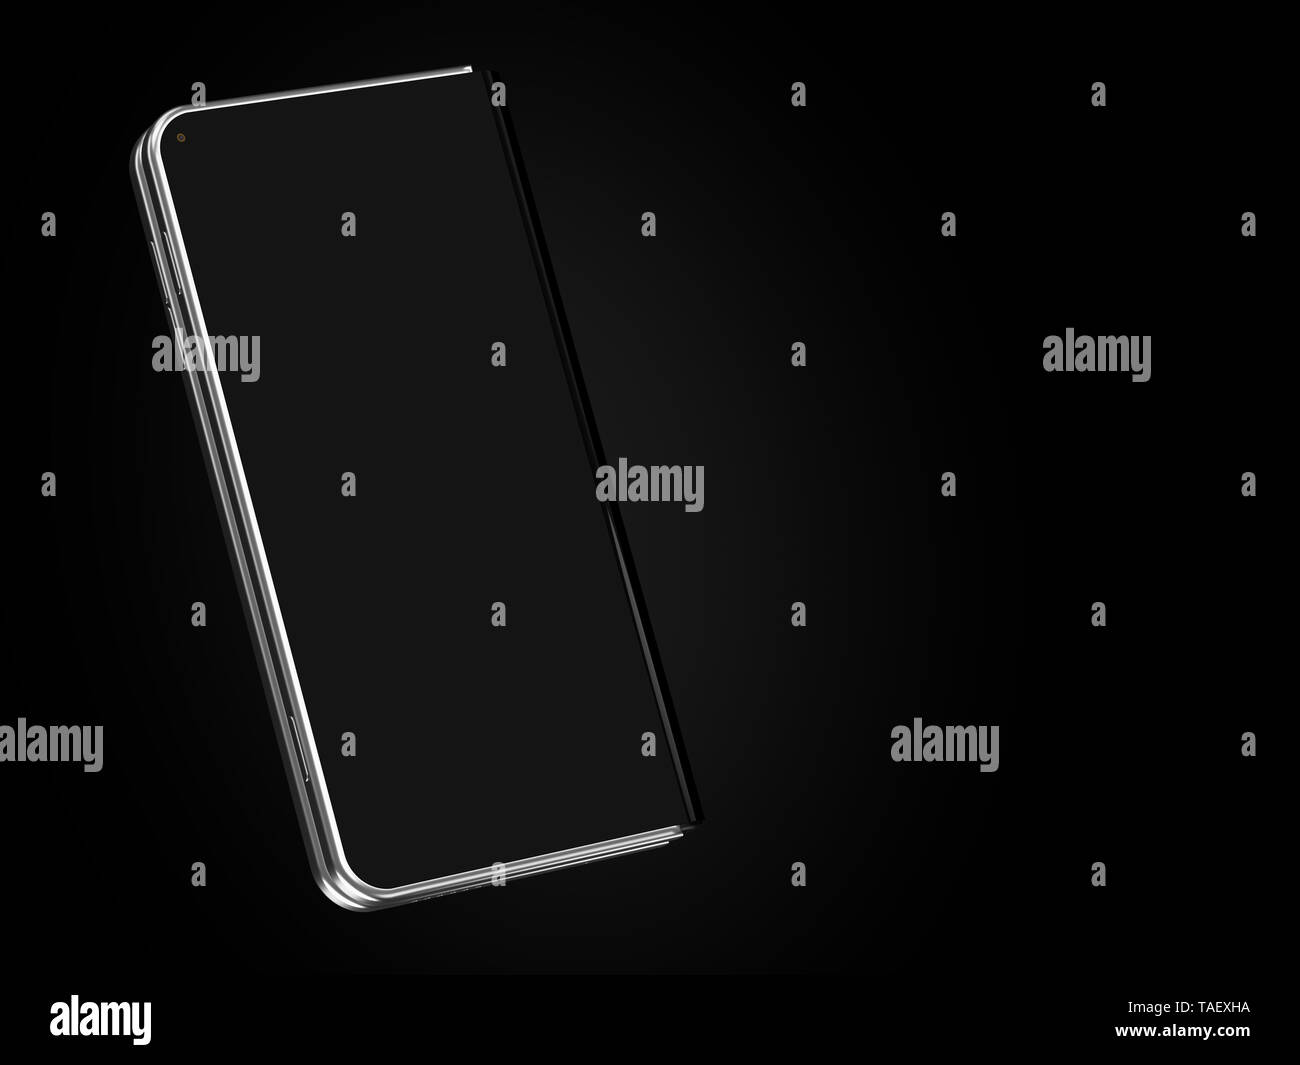 Konzept der faltbare smartphone Falten auf der längeren Seite. Flexible Smartphone auf schwarzem Hintergrund isoliert. 3D-Rendering Stockfoto